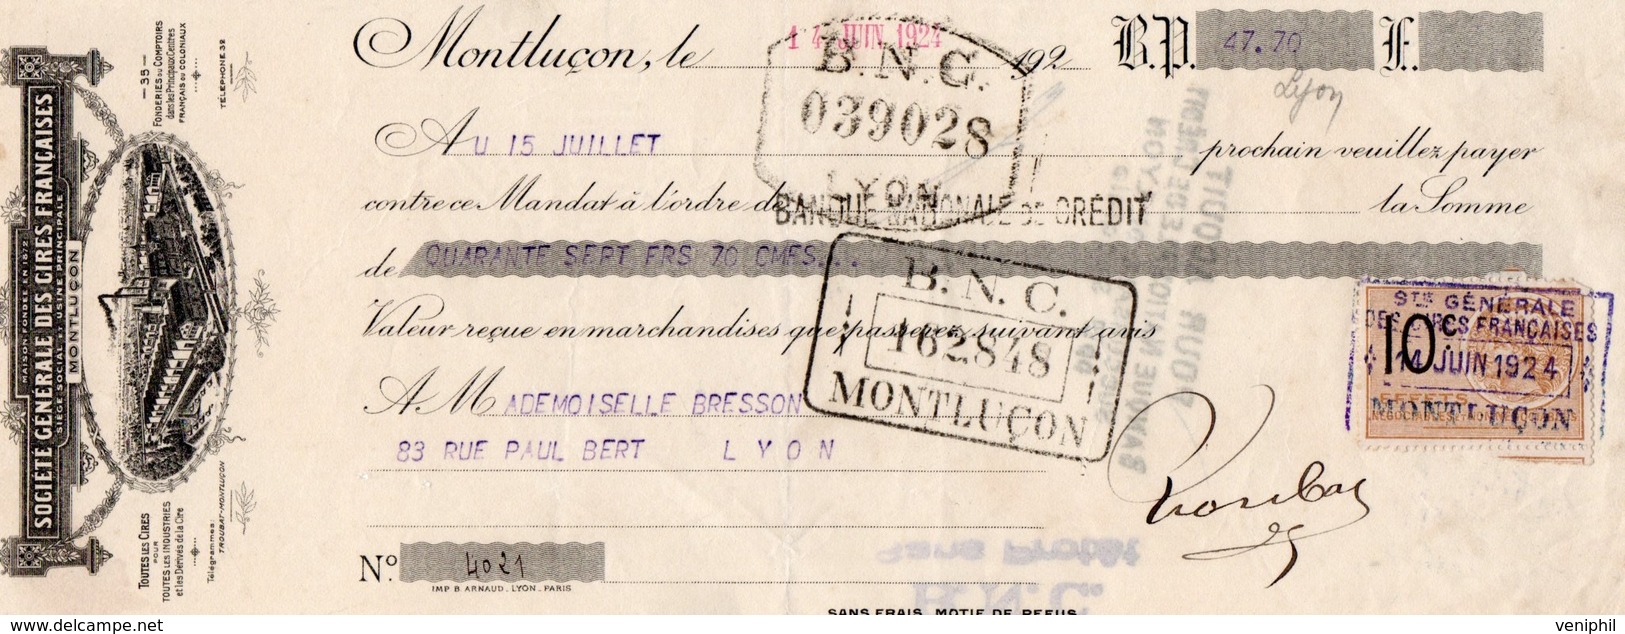 LETTRE DE CHANGE - SOCIETE GENERALE DES CIRES FRANCAISES -MONTLUCON -1924 - Bills Of Exchange